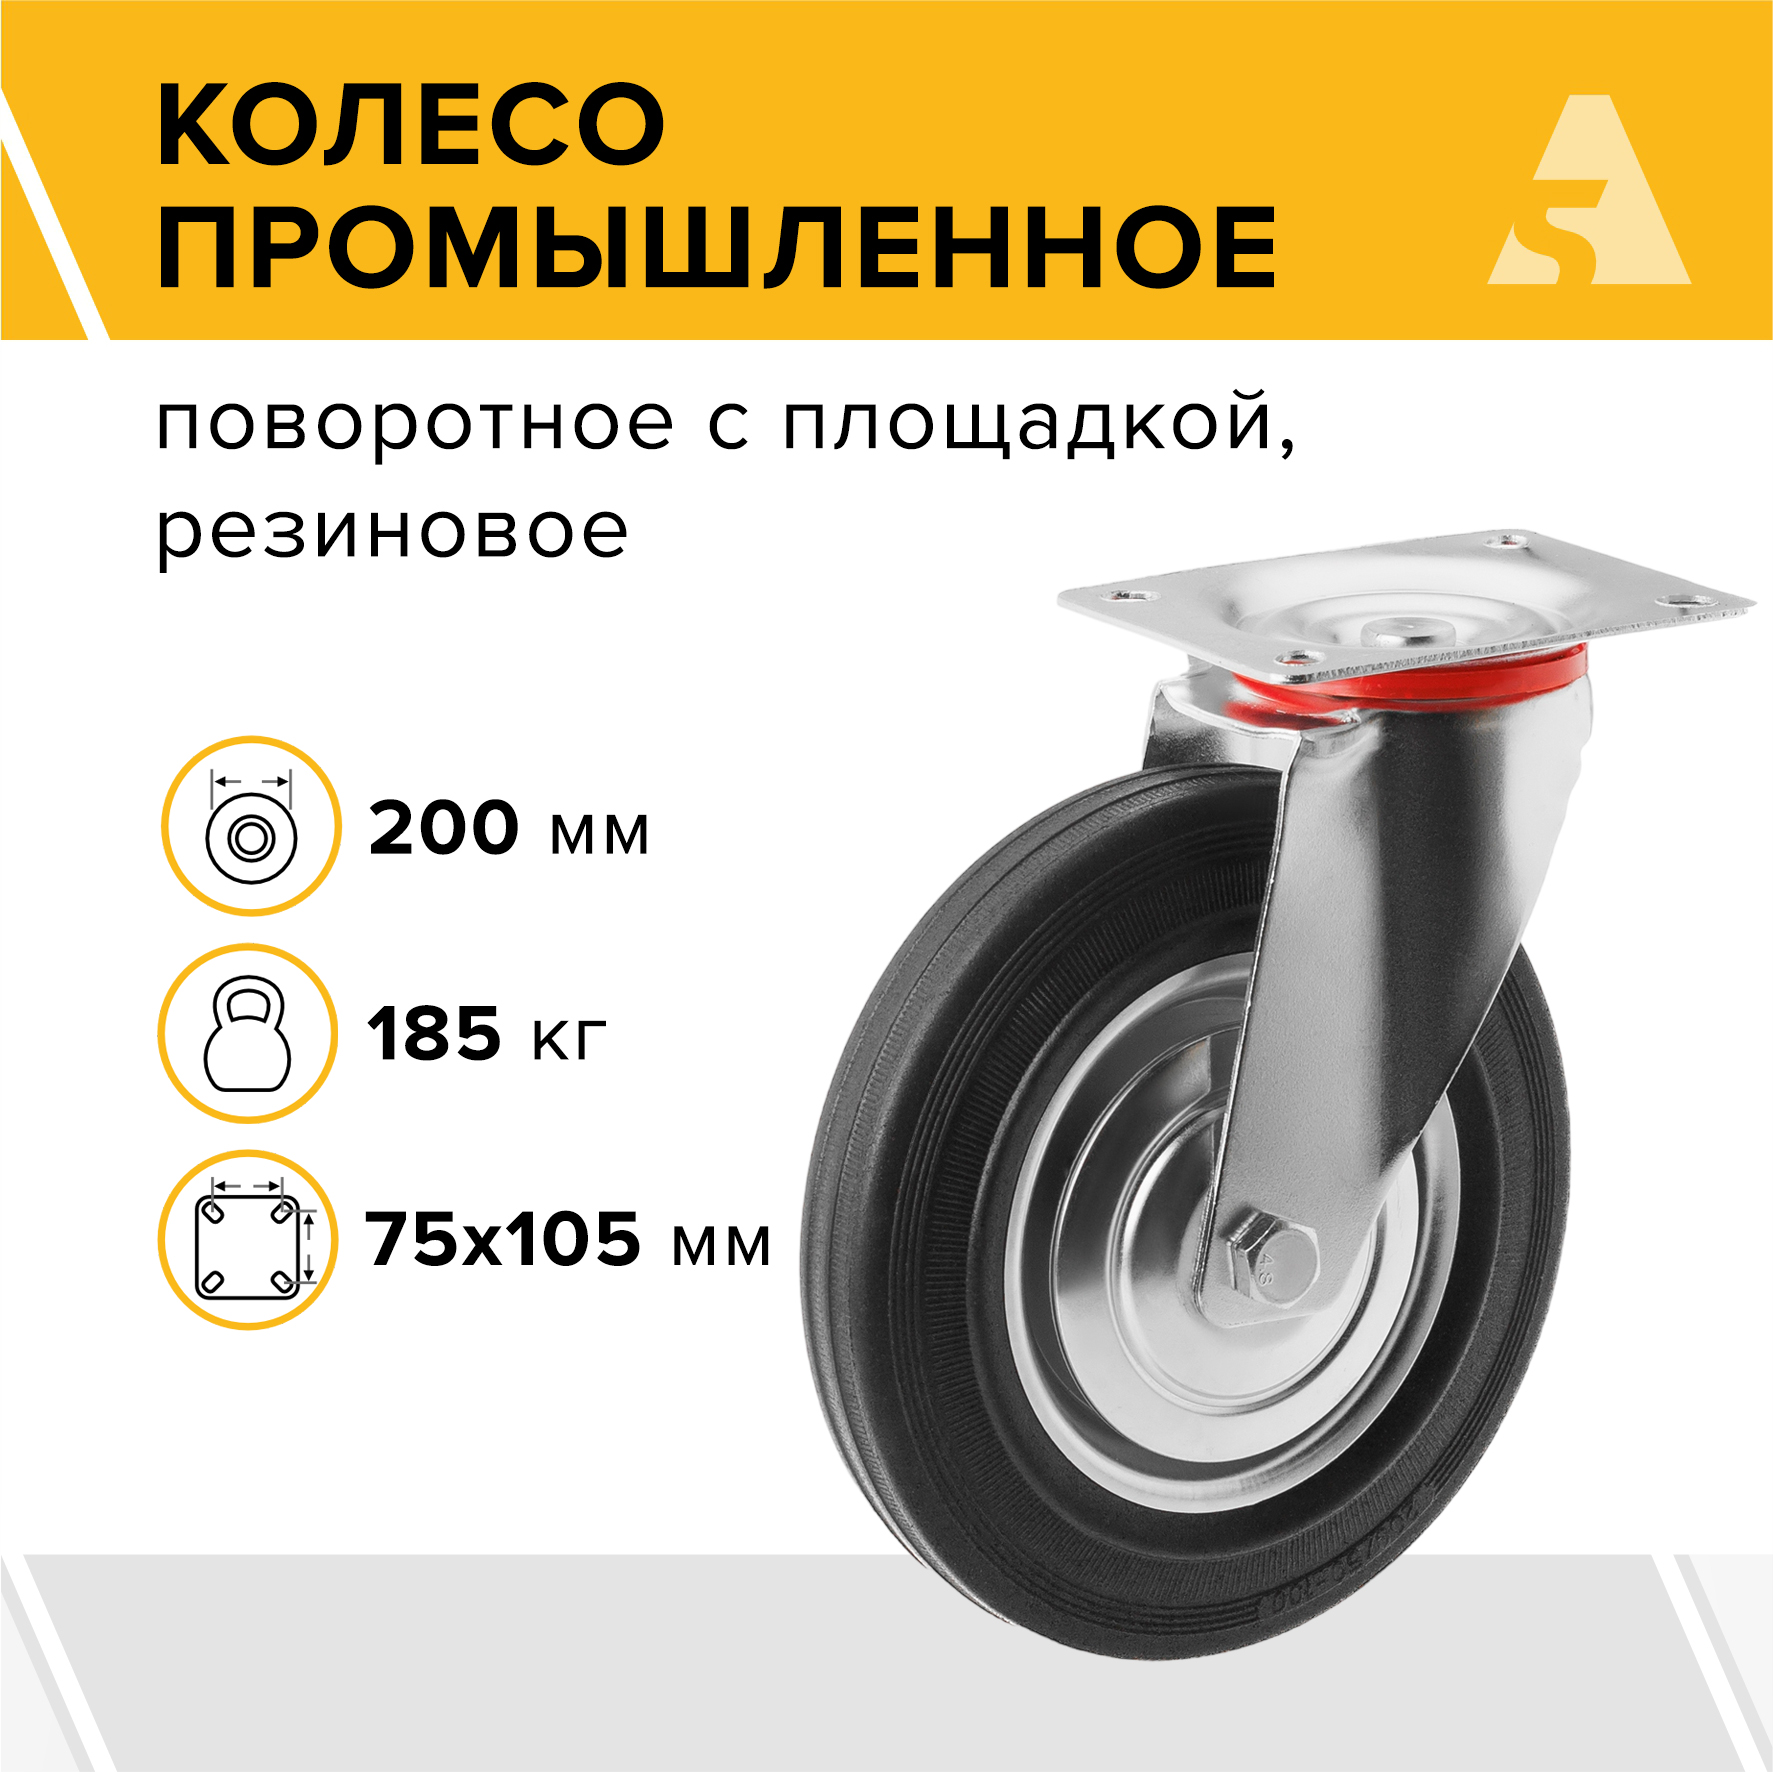 Колесо промышленное А5 SC 80 1000011 промышленное неповоротное колесо mfk torg